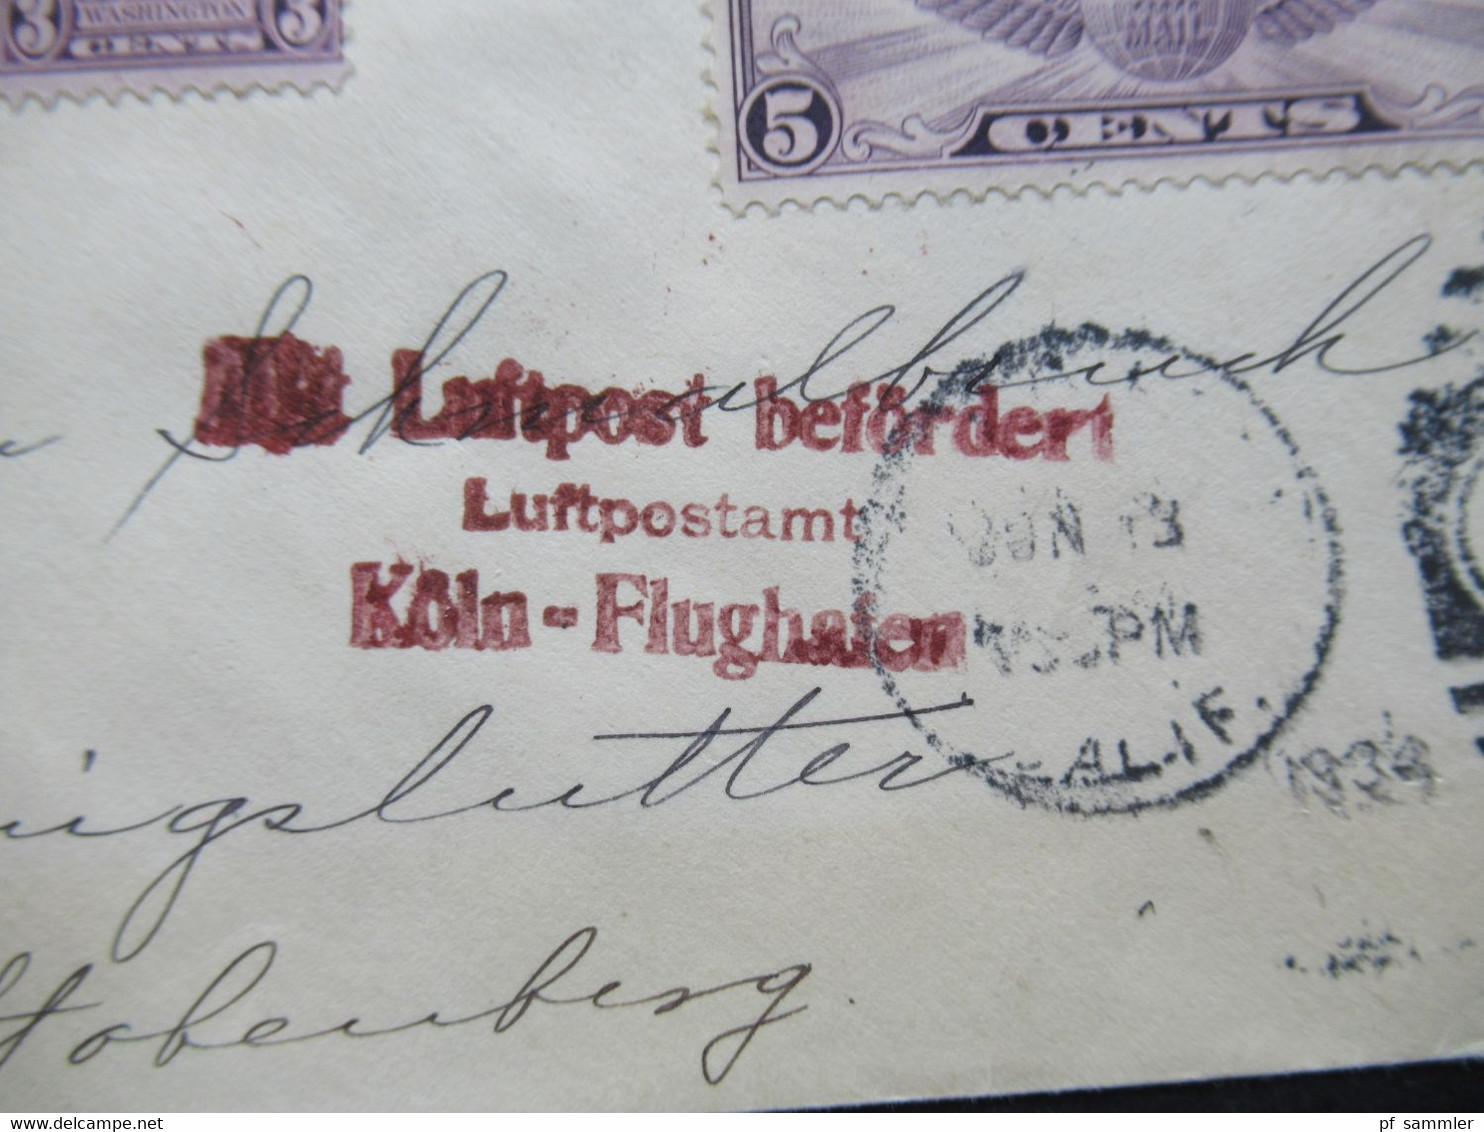 USA 1934 Flugpostmarke Nr. 321 Rechts Ungezähnt Roter Stempel Mit Luftpost Befördert Luftpostamt Köln Flughafen - Covers & Documents